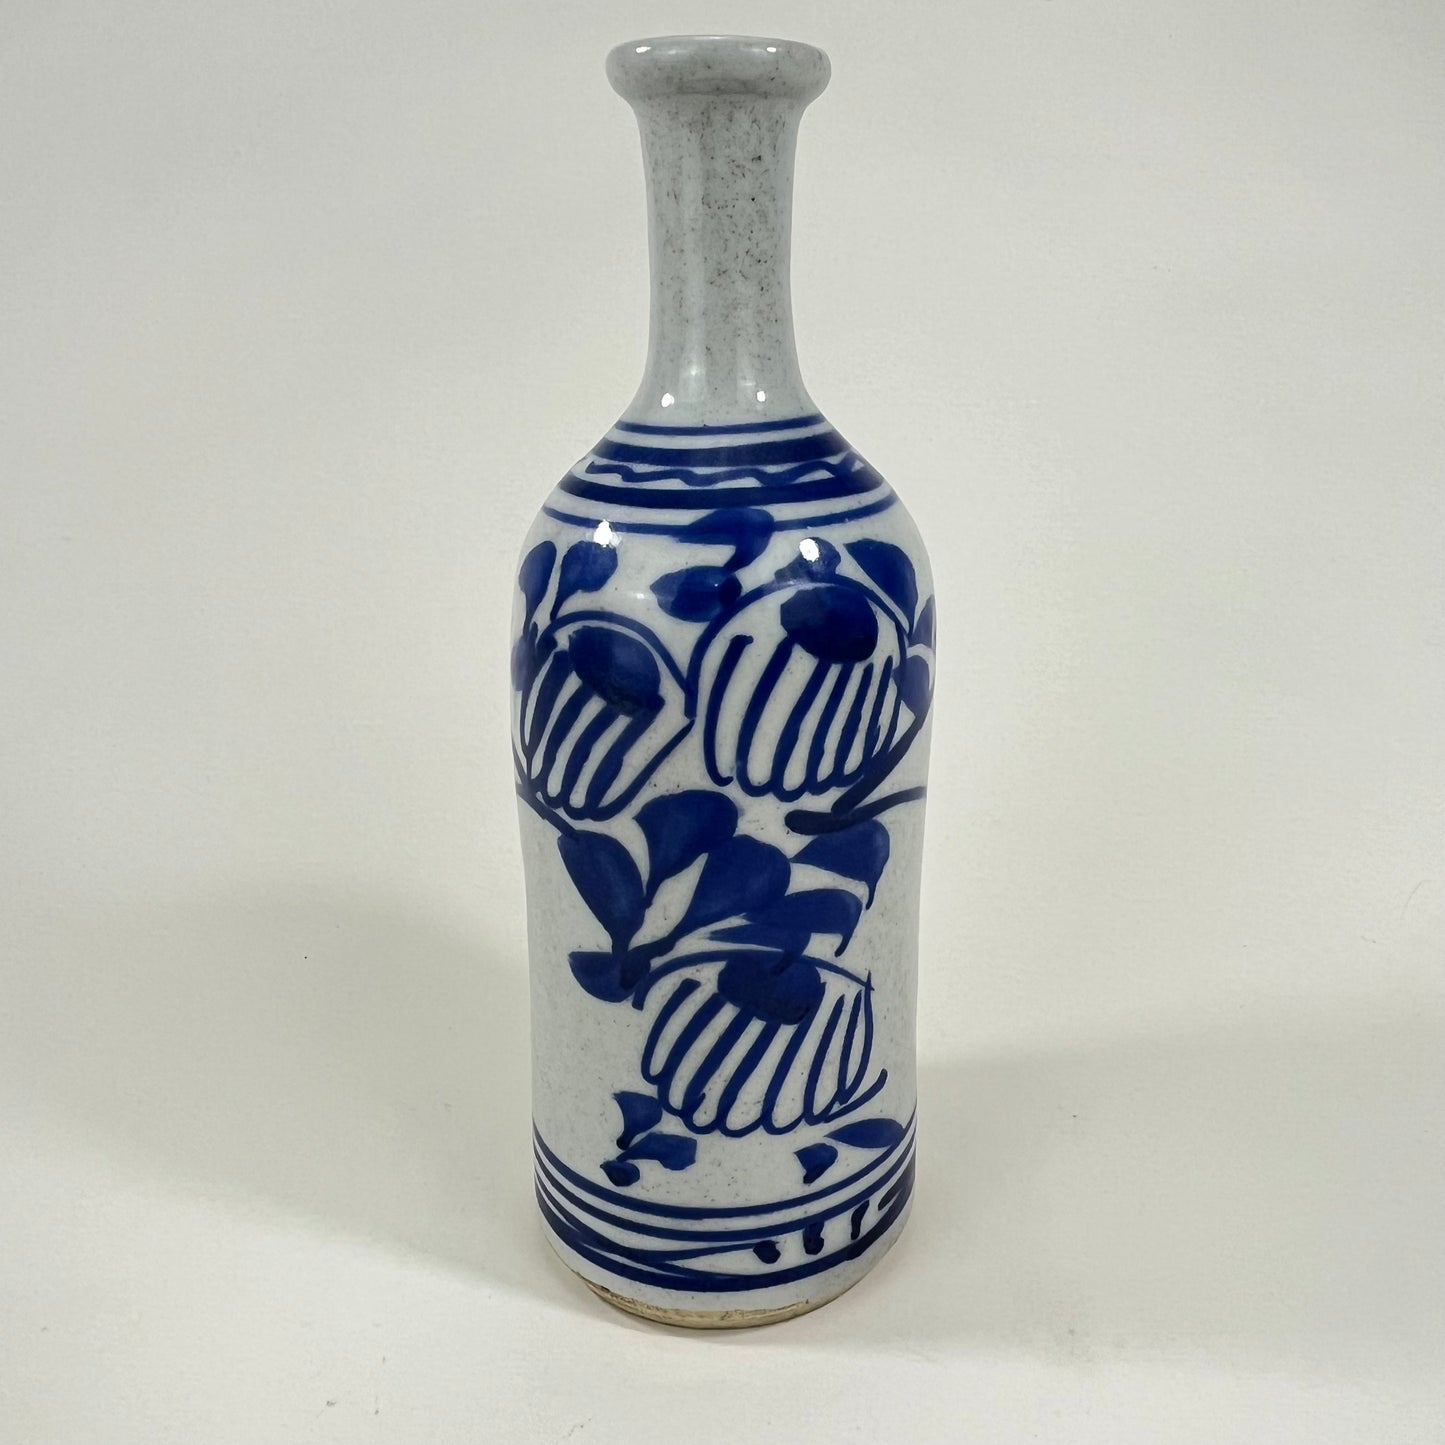 Antique Japanese Late Edo Era Ceramic Tokkuri Sake Bottle 9” (damaged)